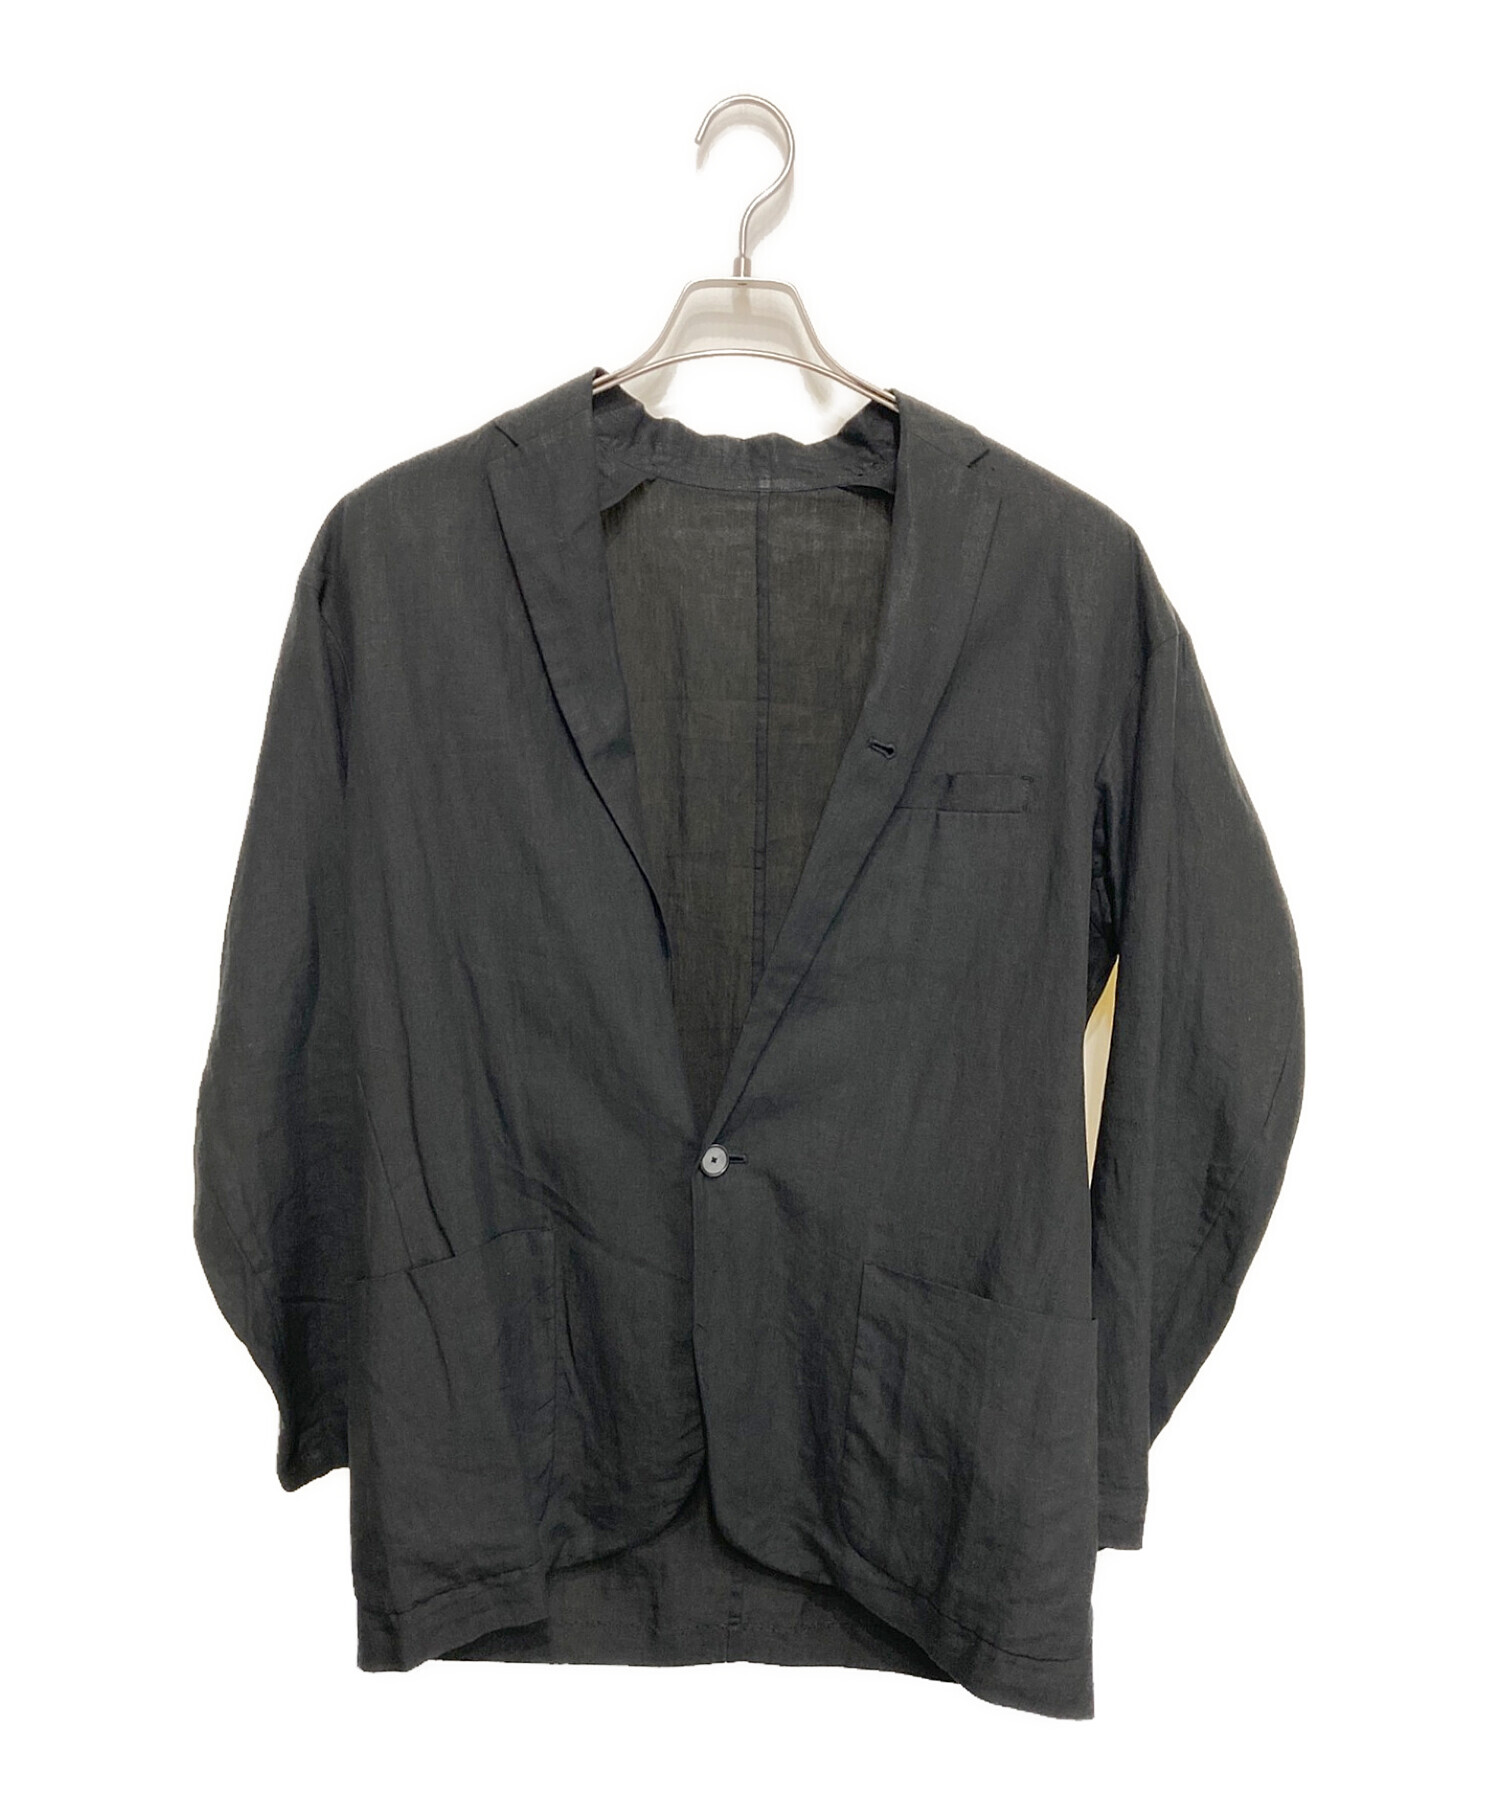 kemit (ケミット) リネンテーラードジャケット ブラック サイズ:46